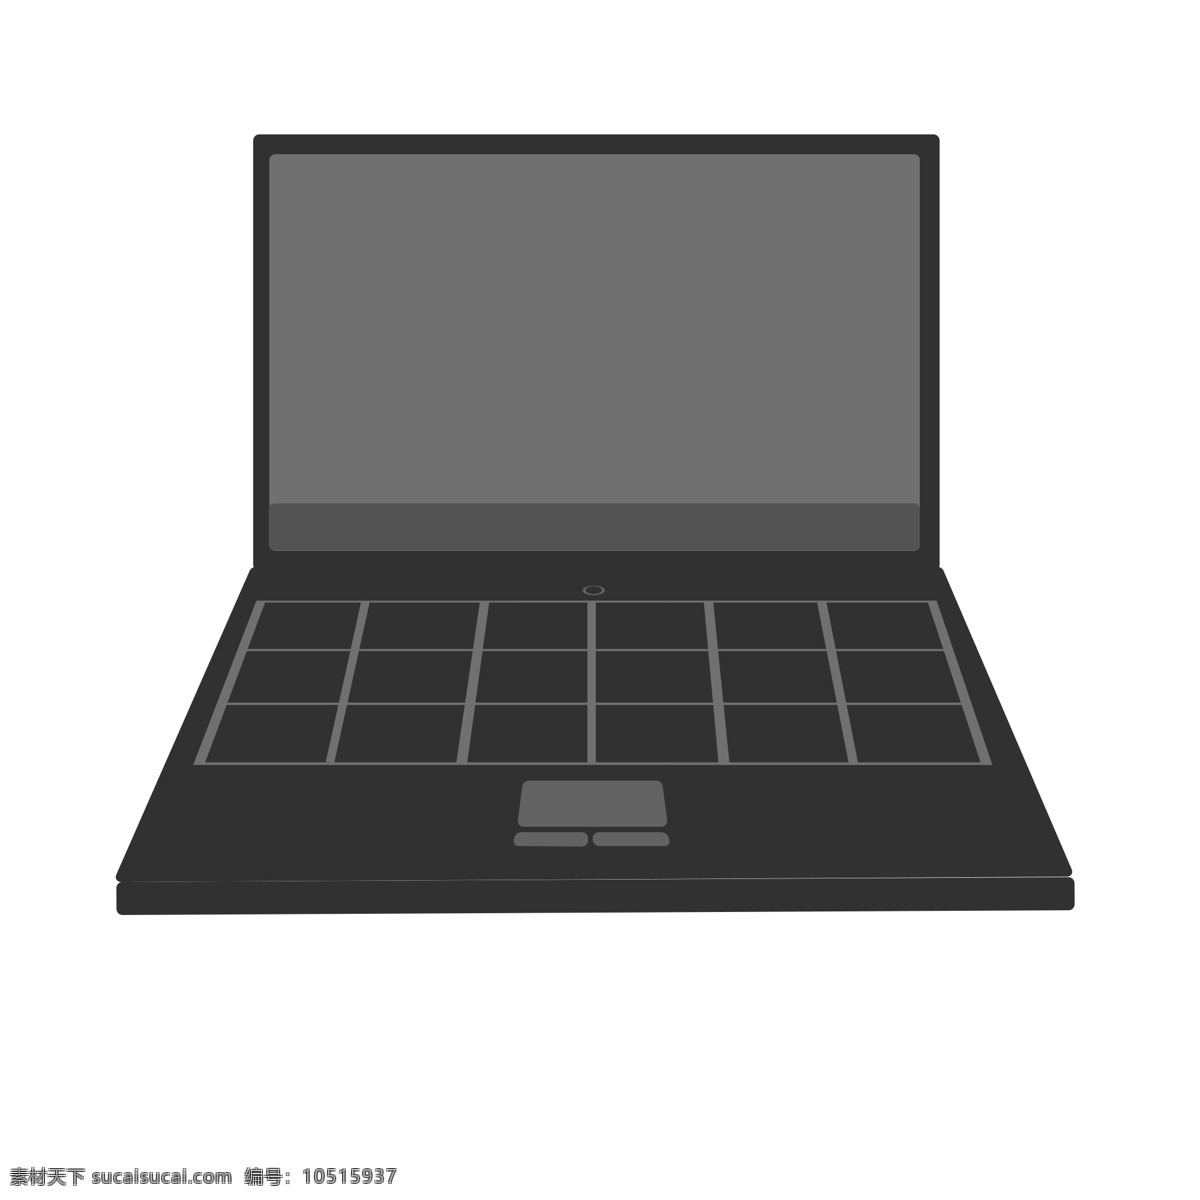 灰色 笔记本 电脑 笔记本电脑 电子产品